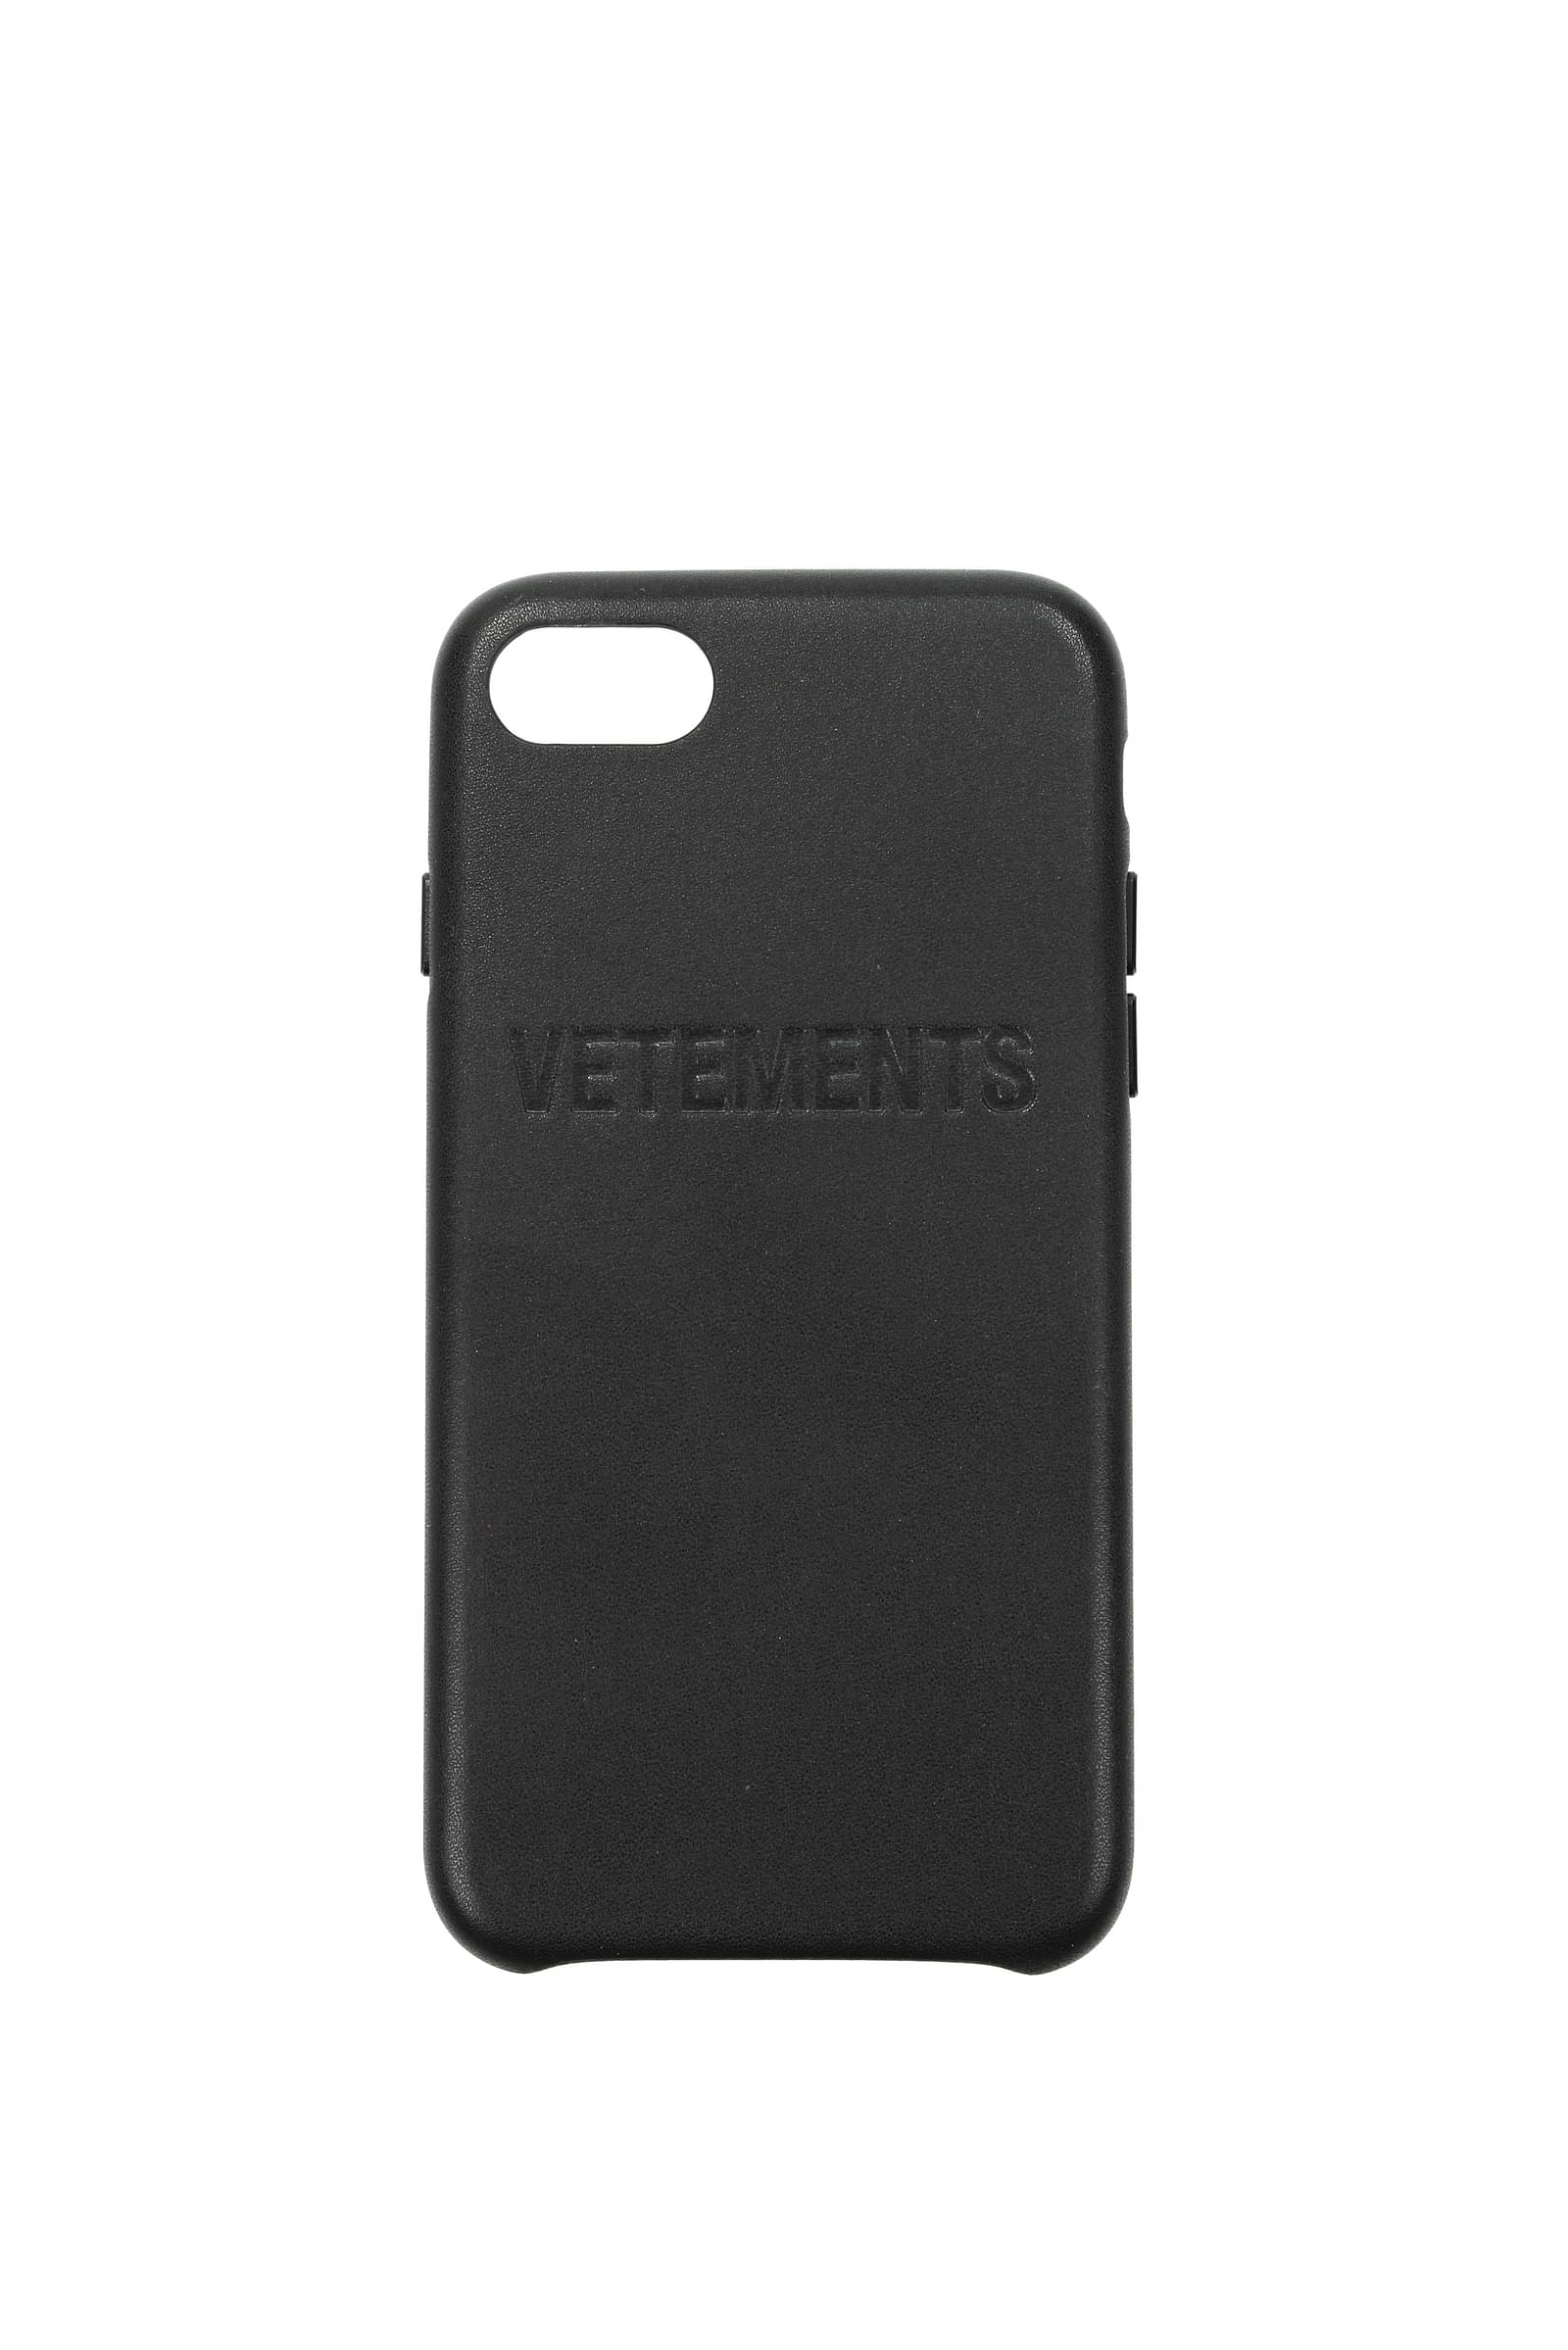 Vetements iPhone cover iphone 8 Men IPHONE8UAH20AC900 Plastic